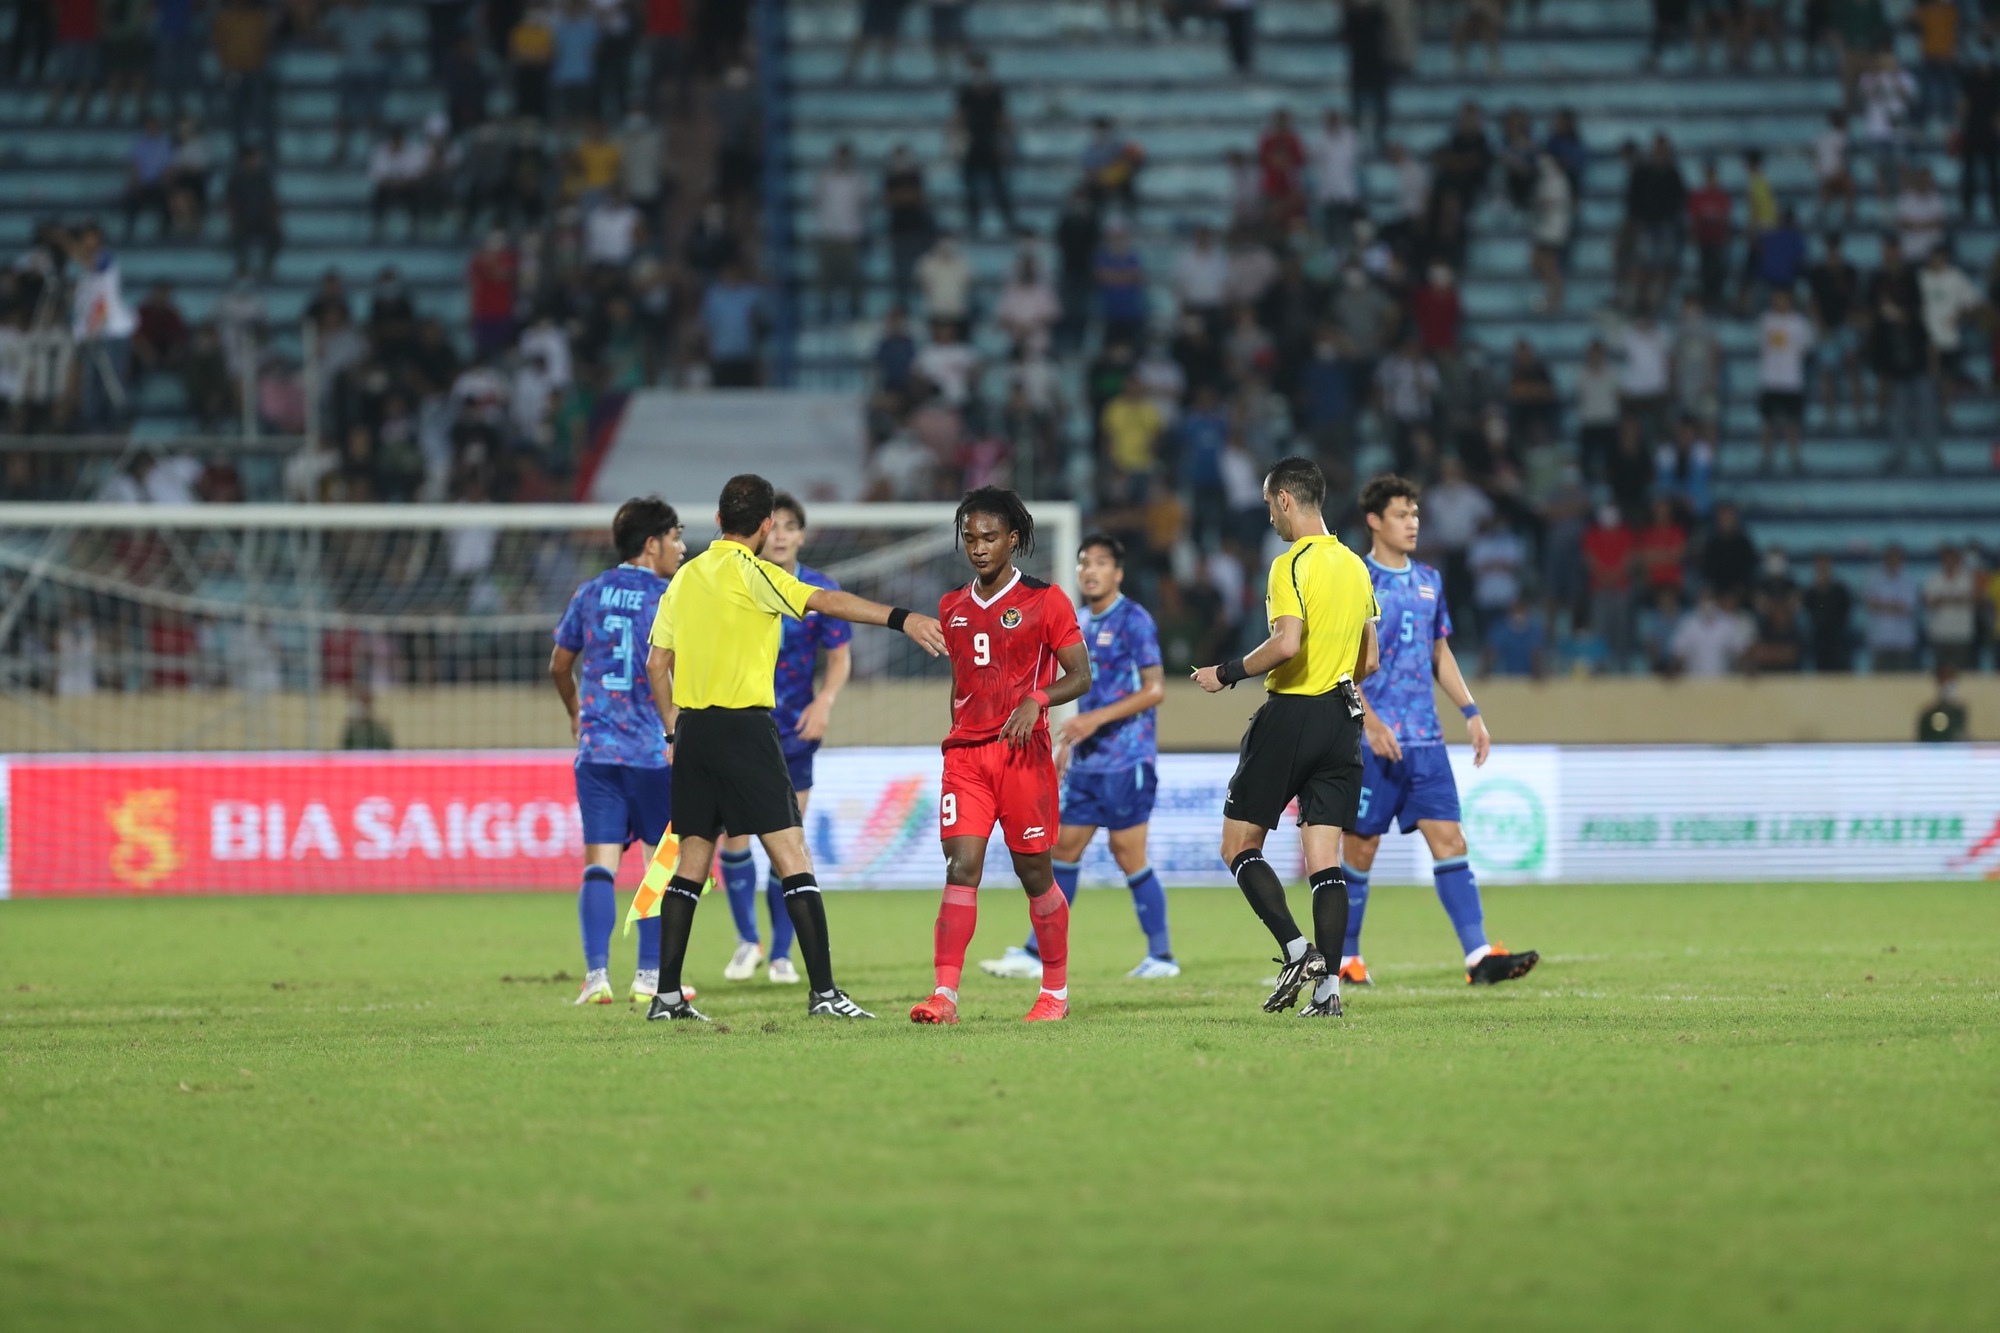 U23 Thái Lan đánh bại Indonesia trong một trận cầu nhiều thẻ đỏ - Ảnh 6.